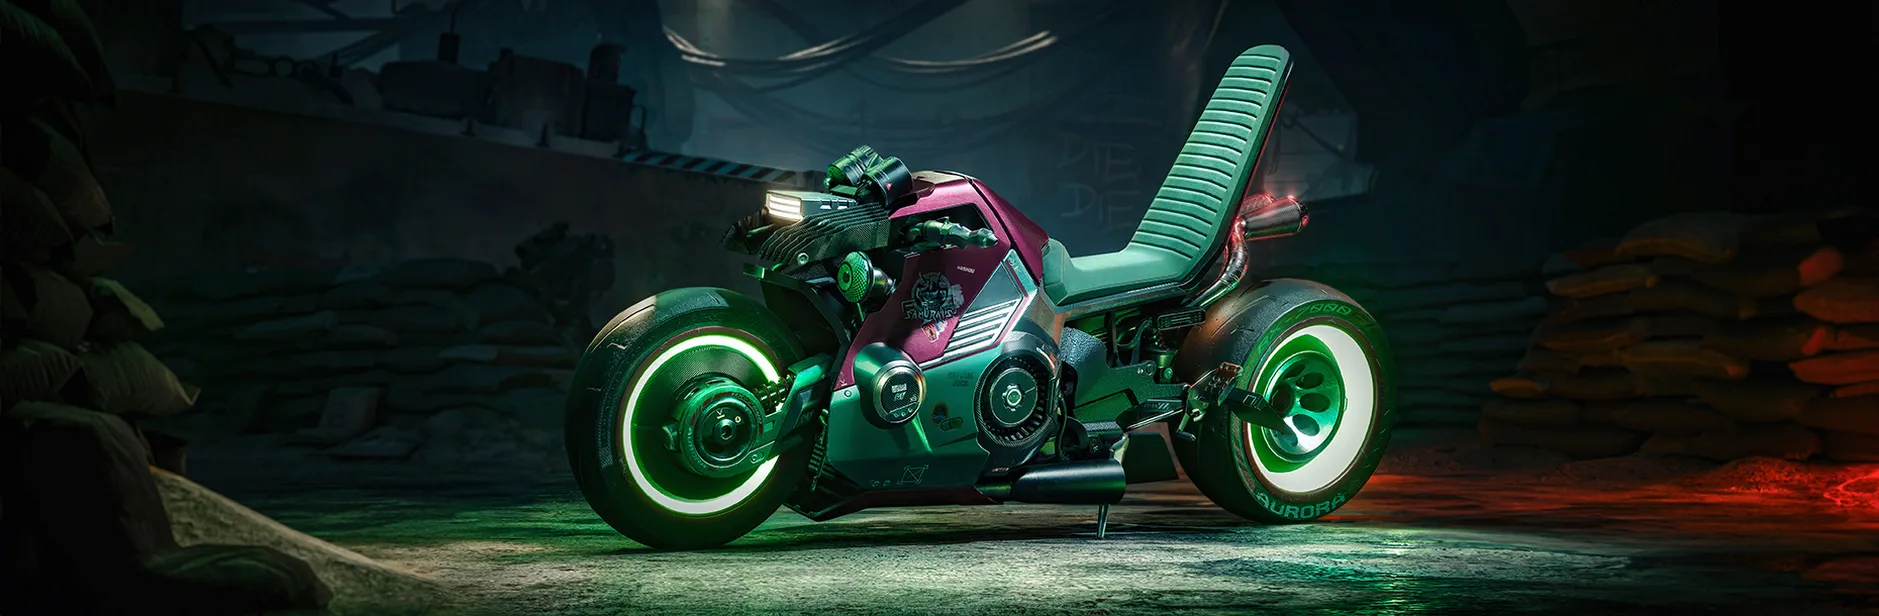 [Cyberpunk 2077] Мотоцикл.